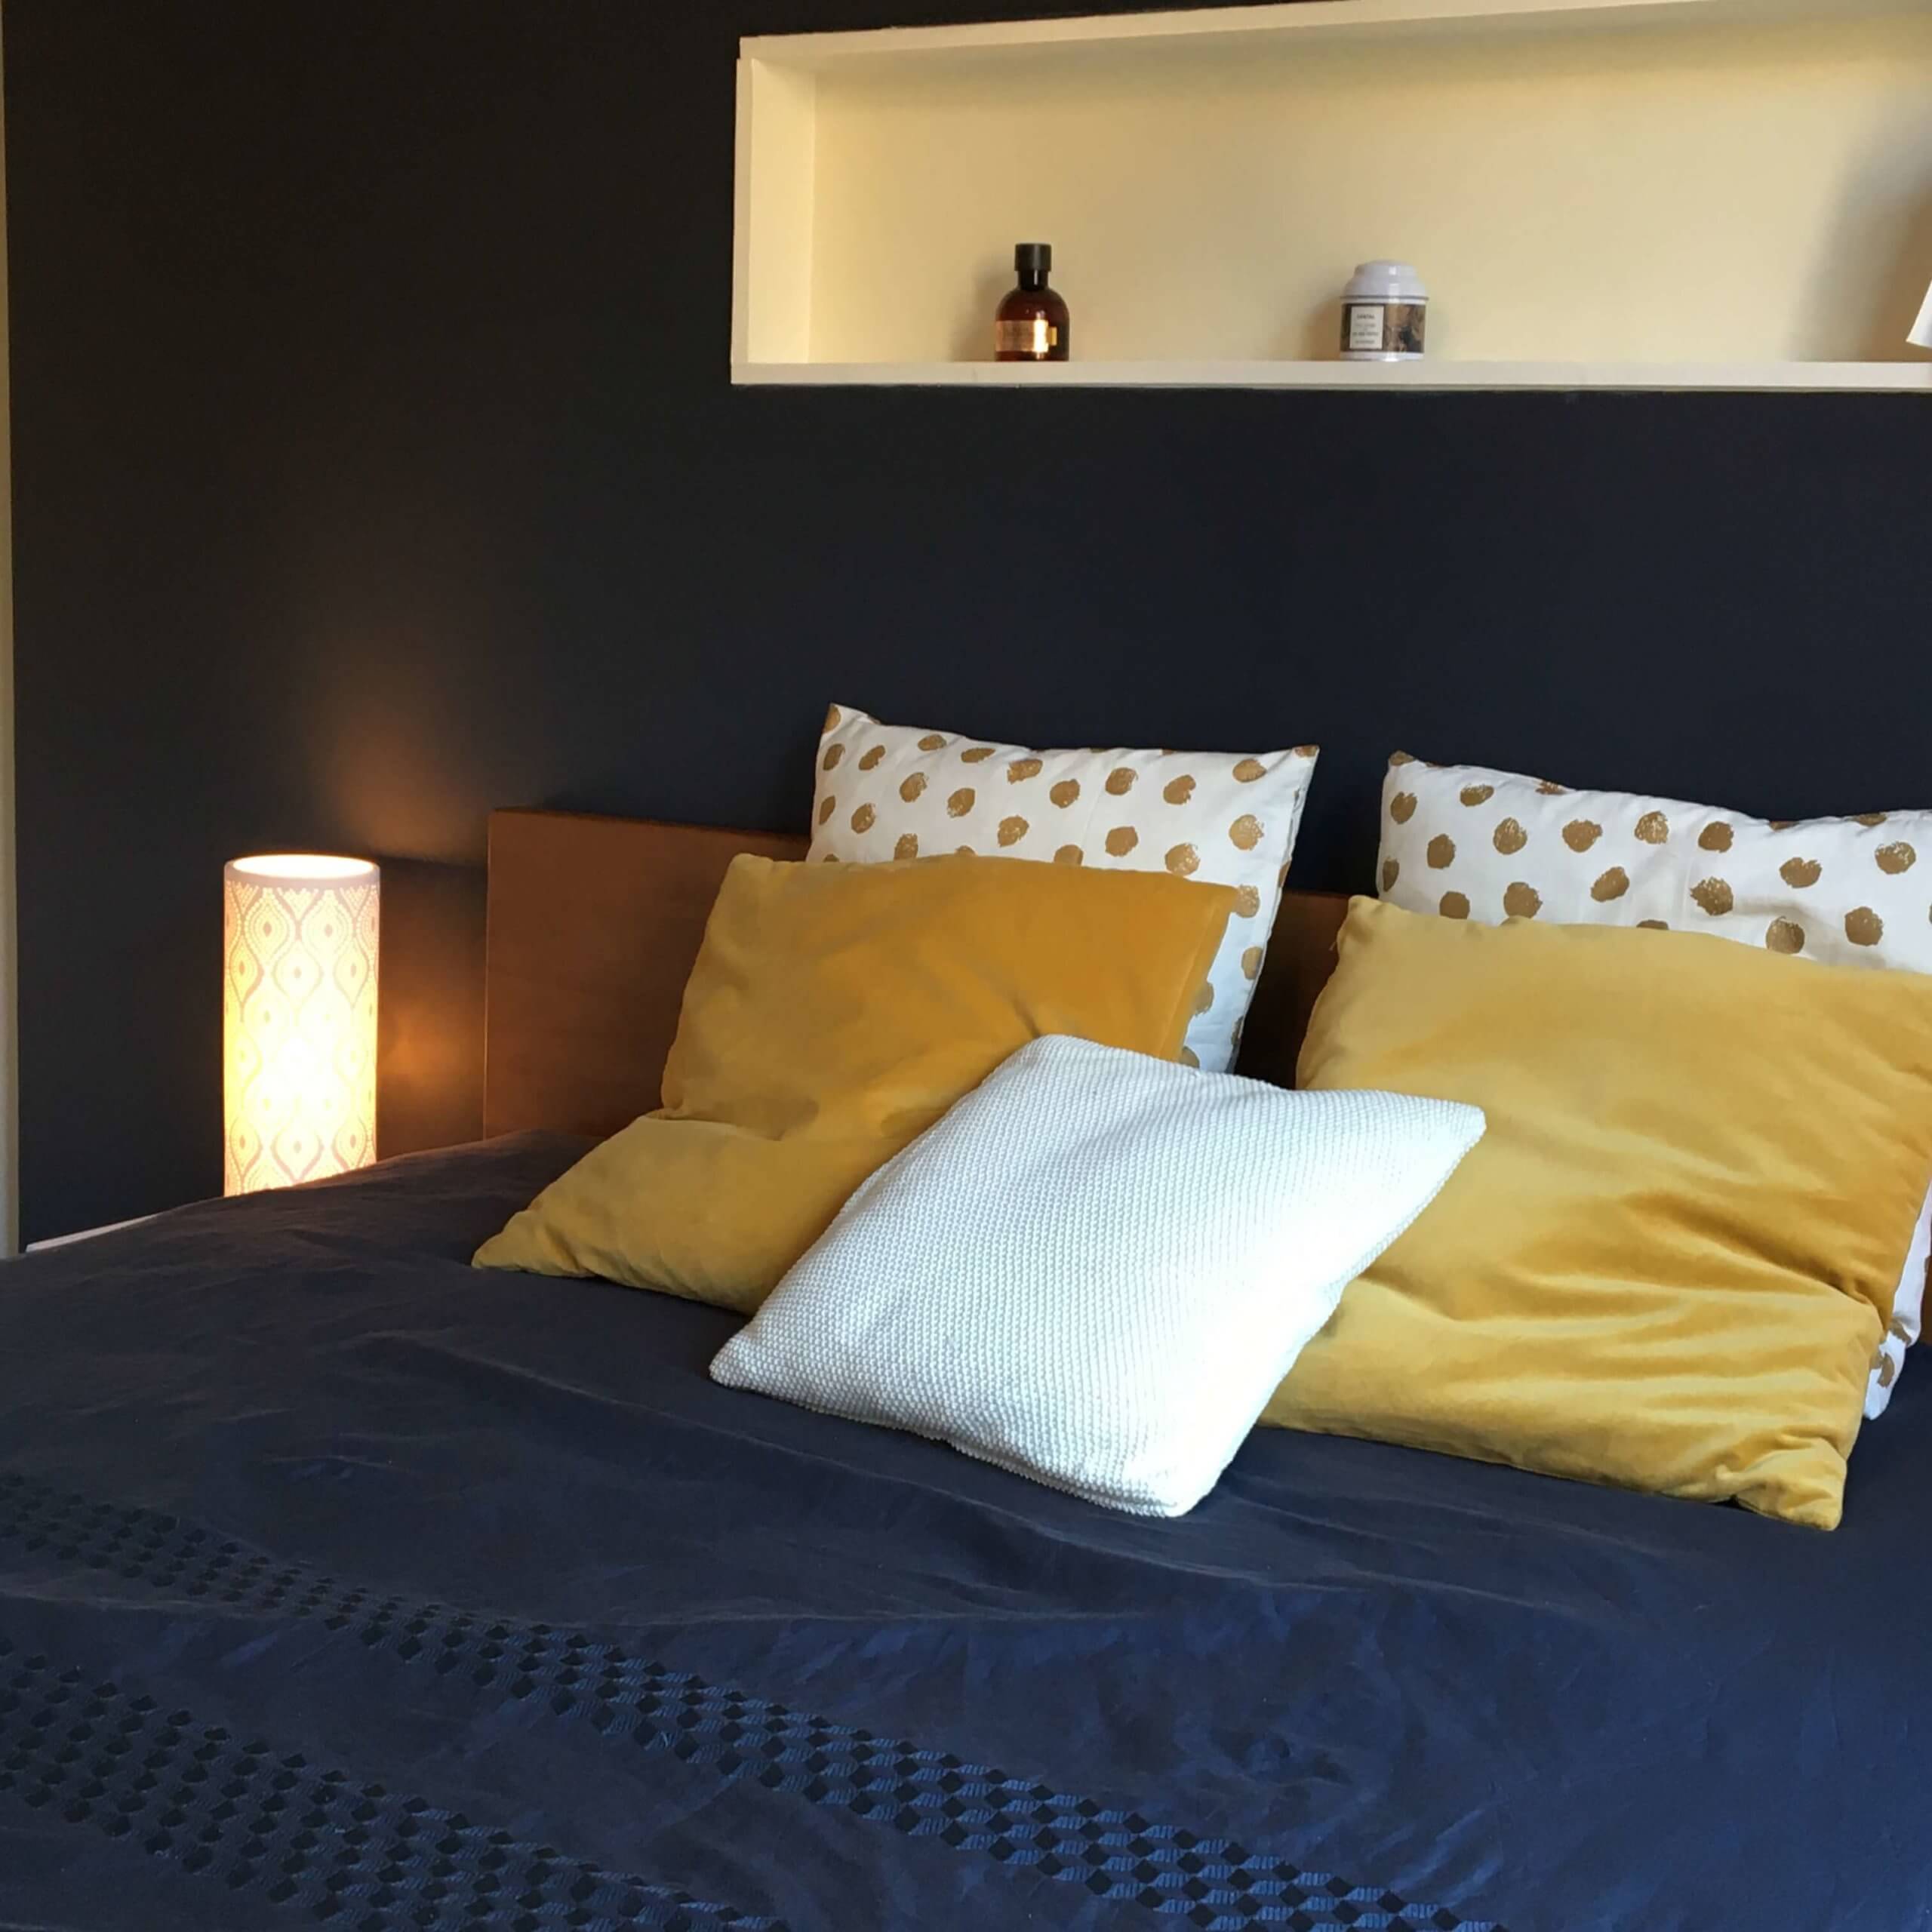 Tête de lit créée sur mesure dans la chambre bleue